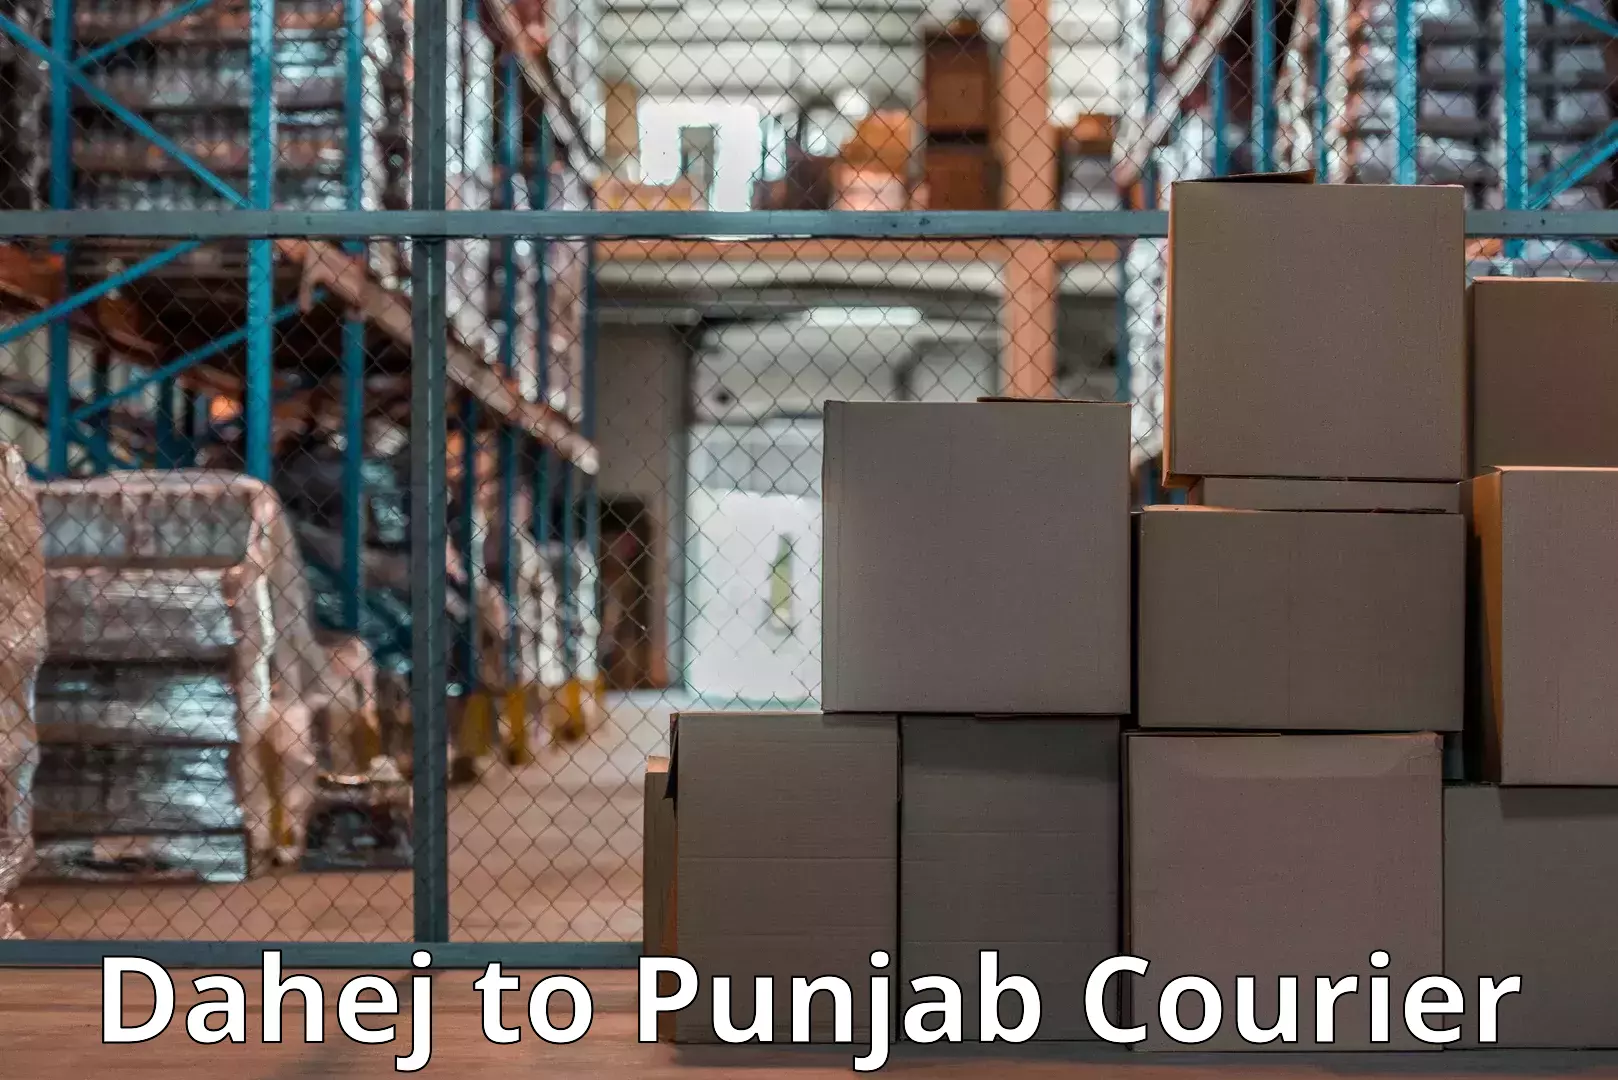 Efficient moving company Dahej to Punjab